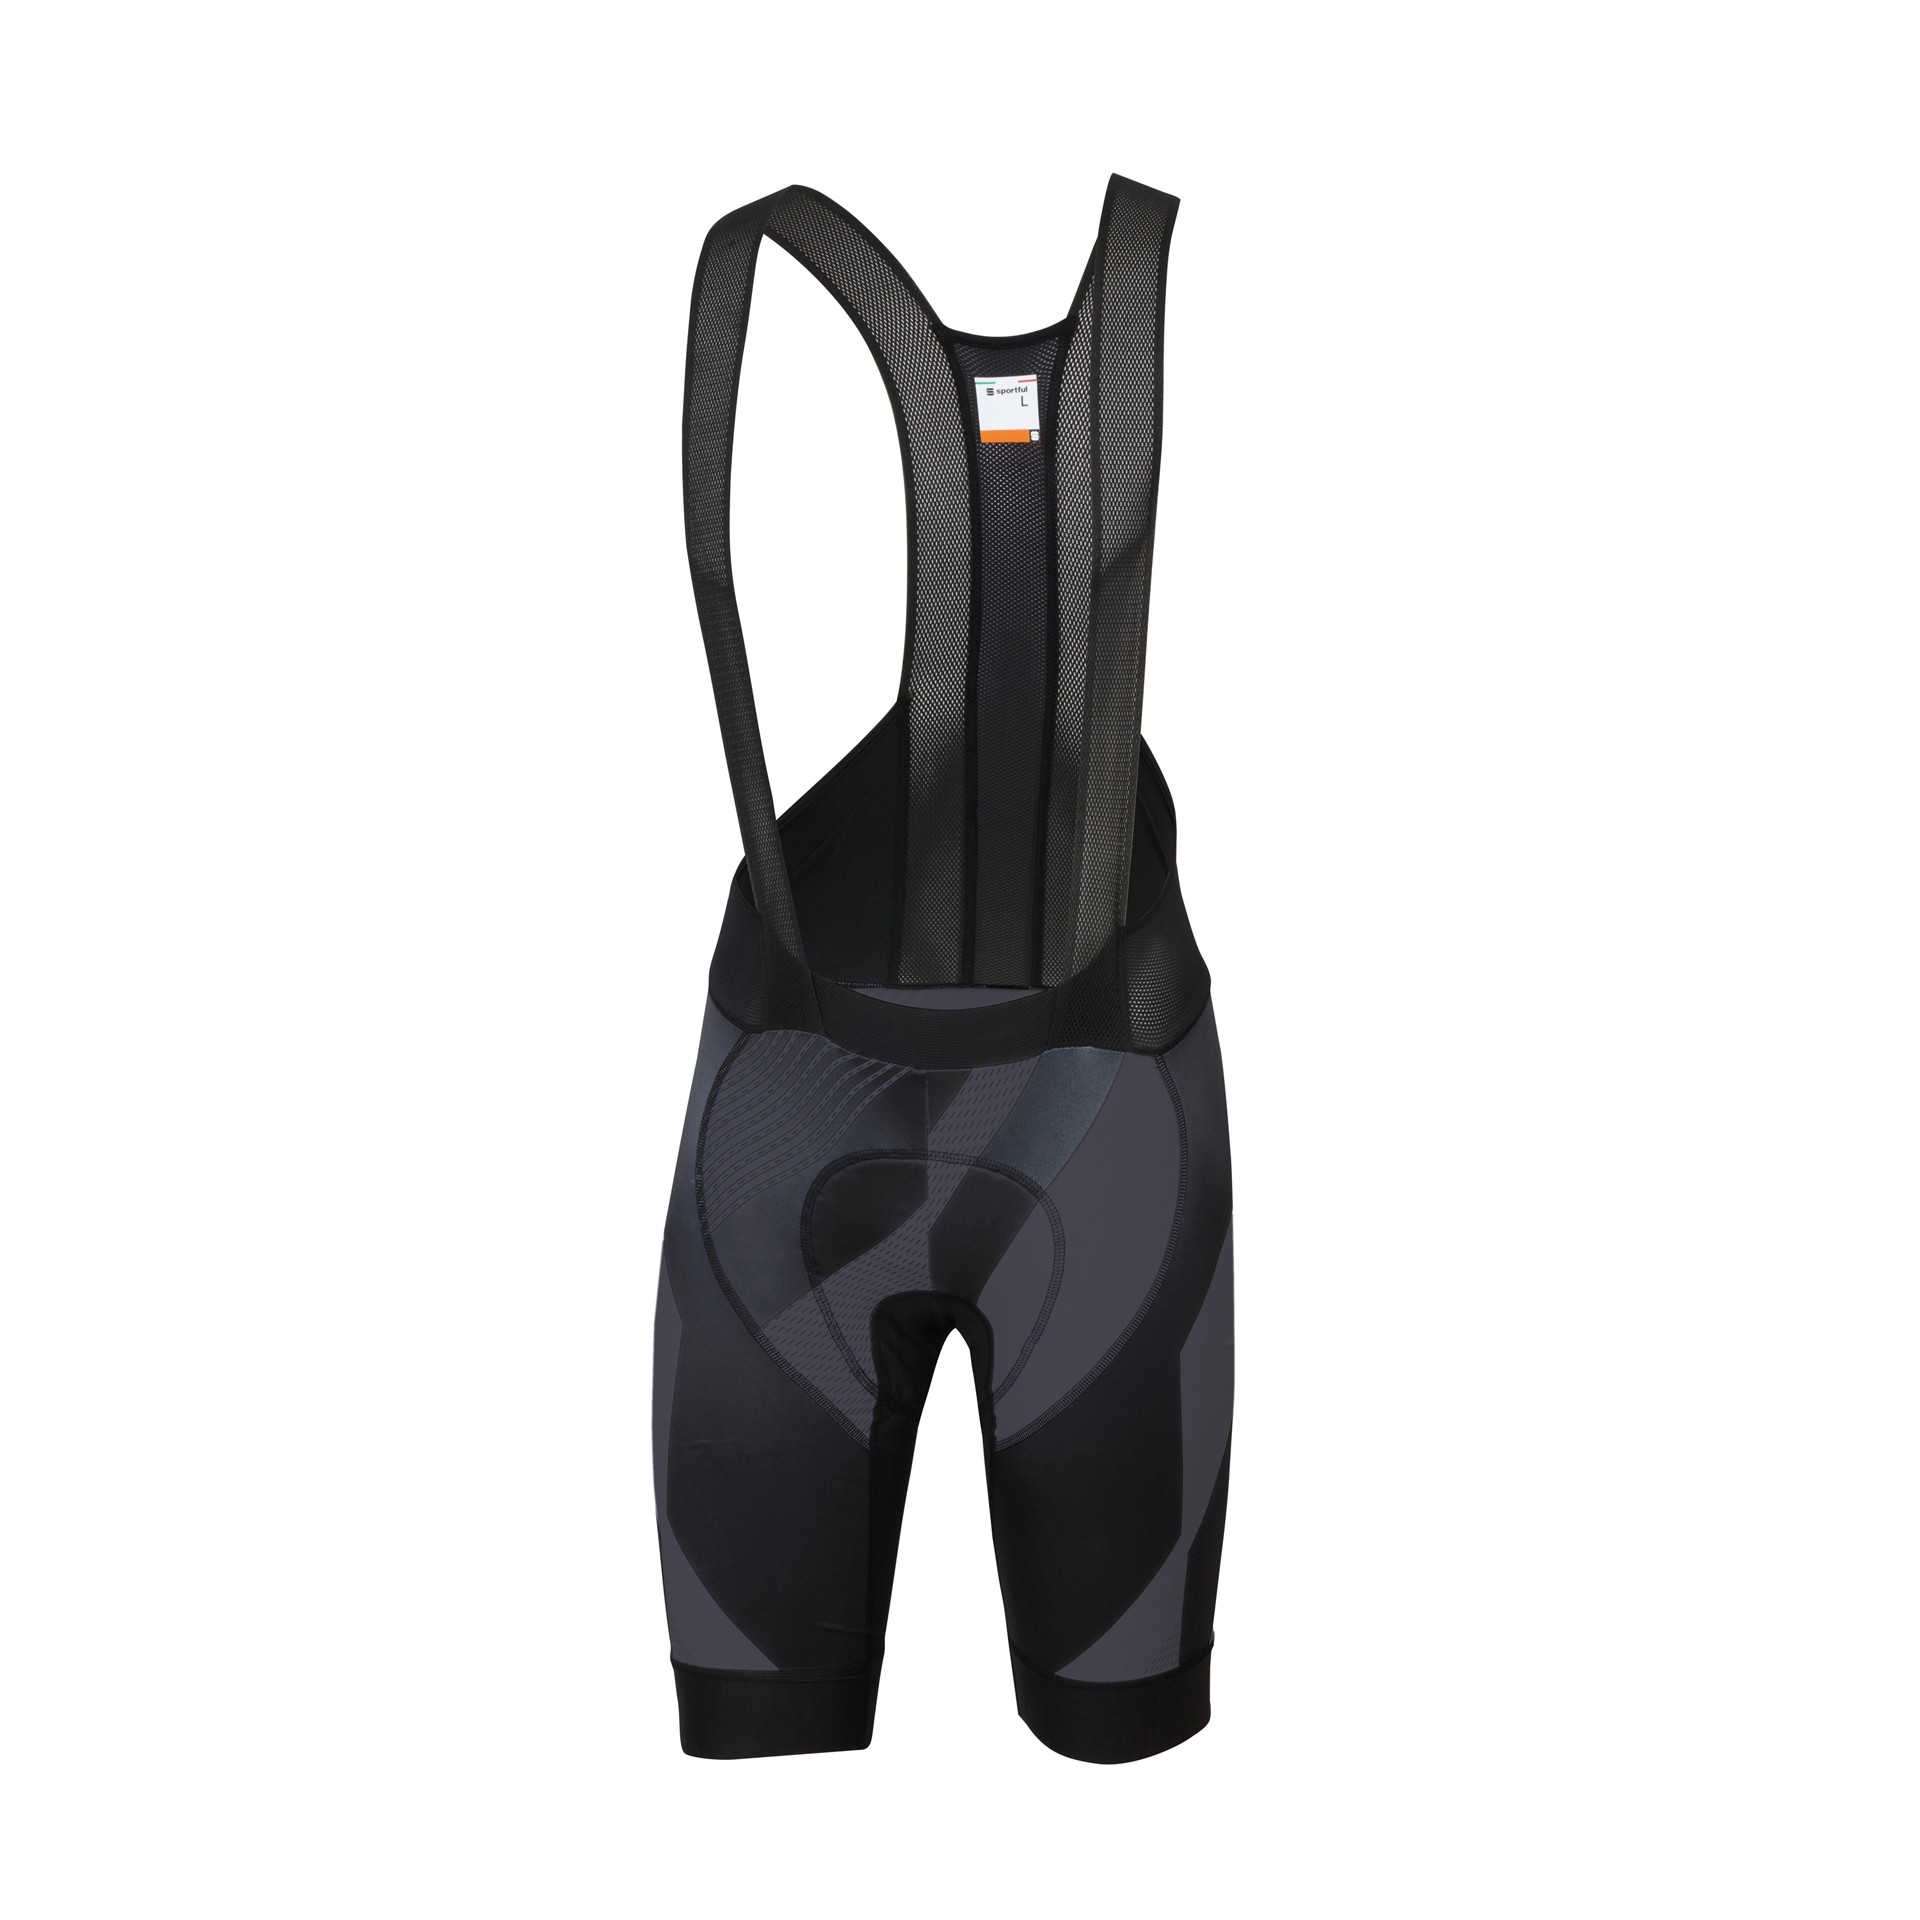 Sportful bodyfit pro 2.0 ltd x cuissard de cyclisme courtes à bretelles noir anthracite